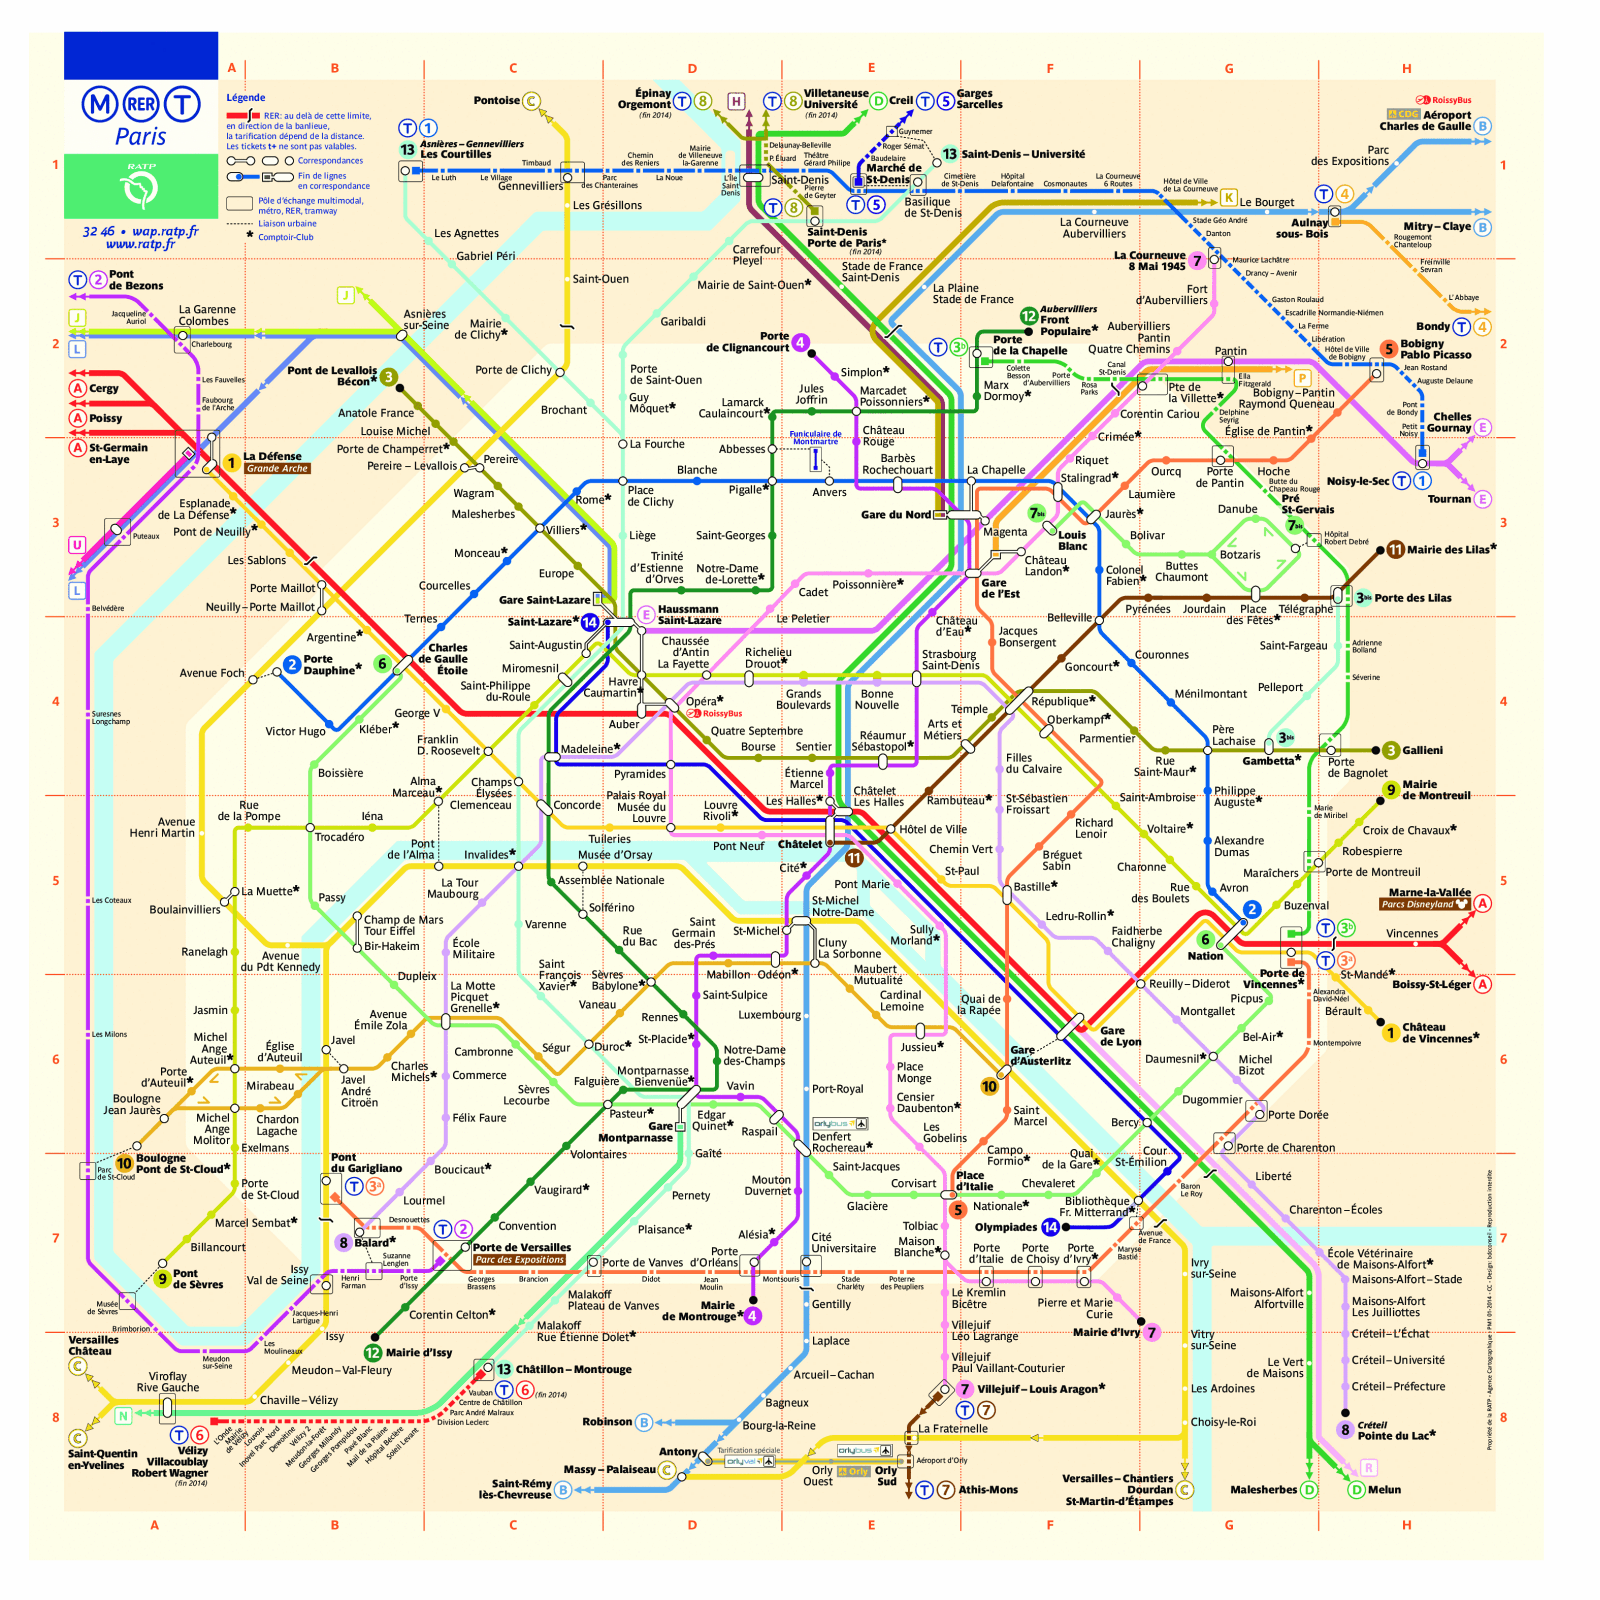 Paris Metro Map and Travel Guide - TourbyTransit